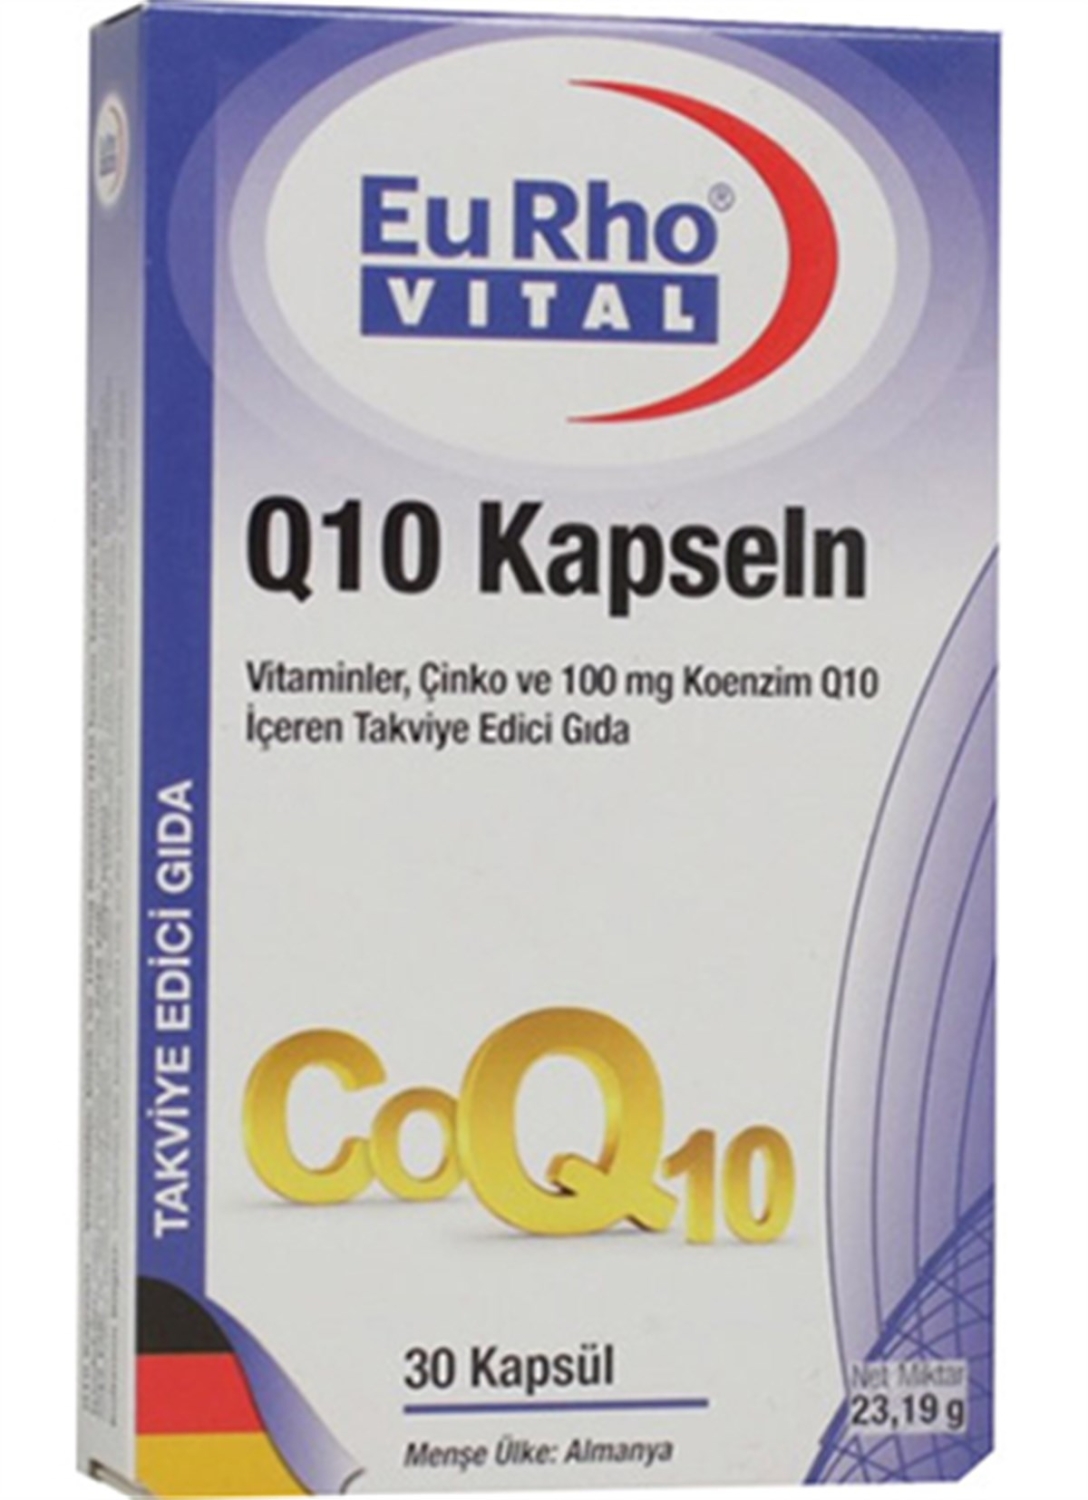 EuRho Vital Q10 30 Kapsül - 1